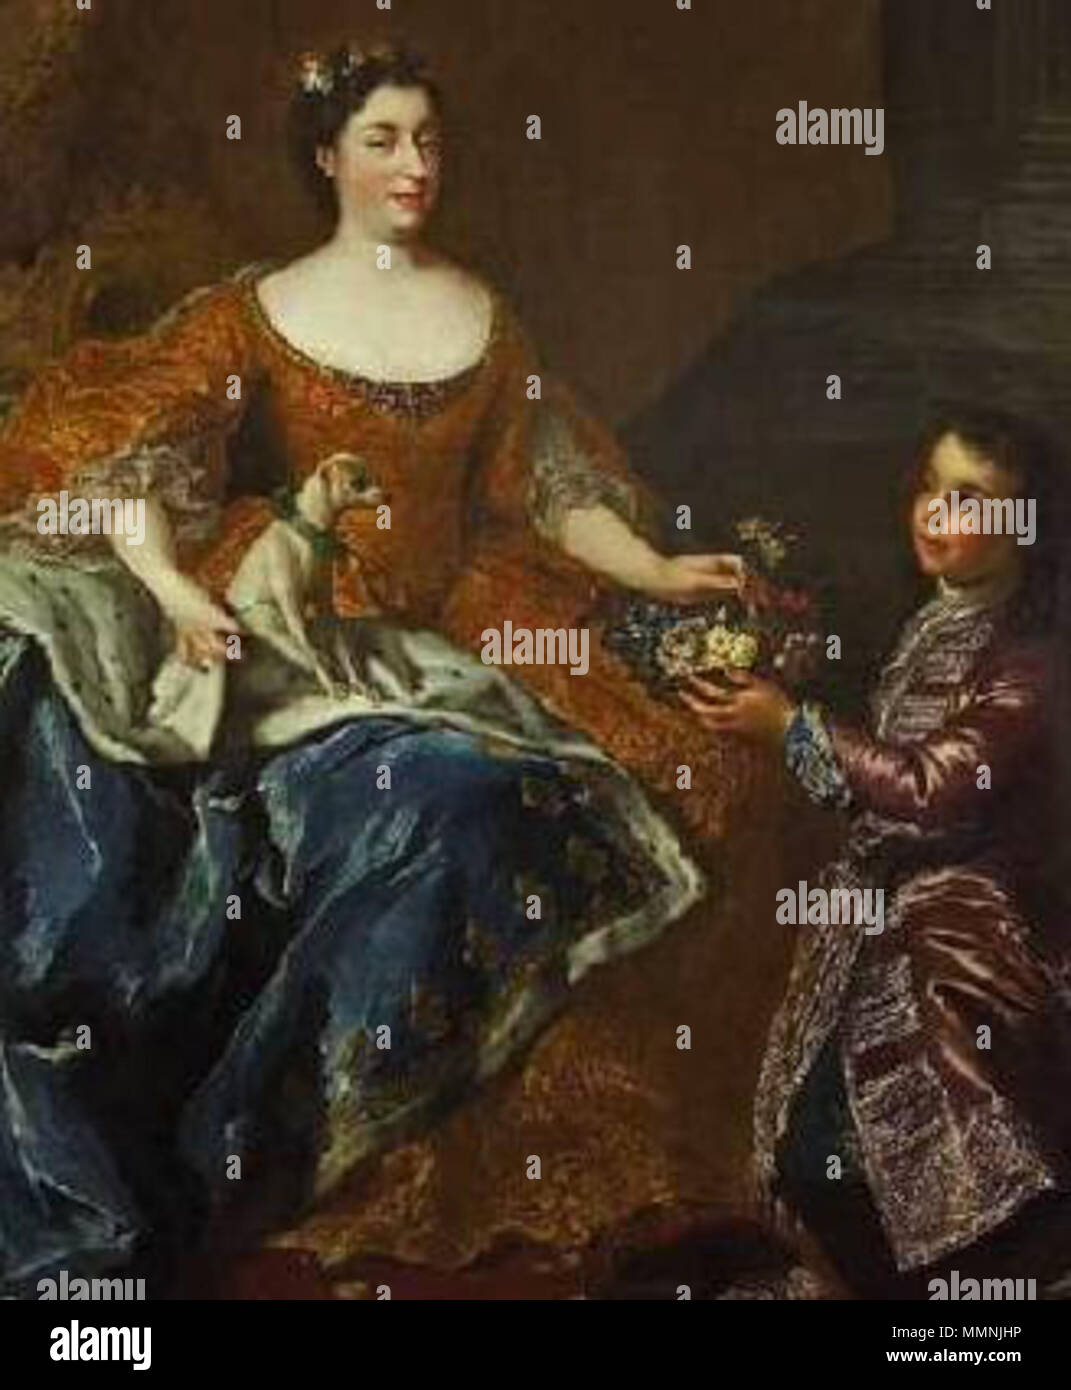 Deatil von Auguste von Baden-Baden, Herzogin von Orléans Ehefrau von Louis d'Orléans wie in 1725 von Belle in Rastatt statt dargestellt Stockfoto